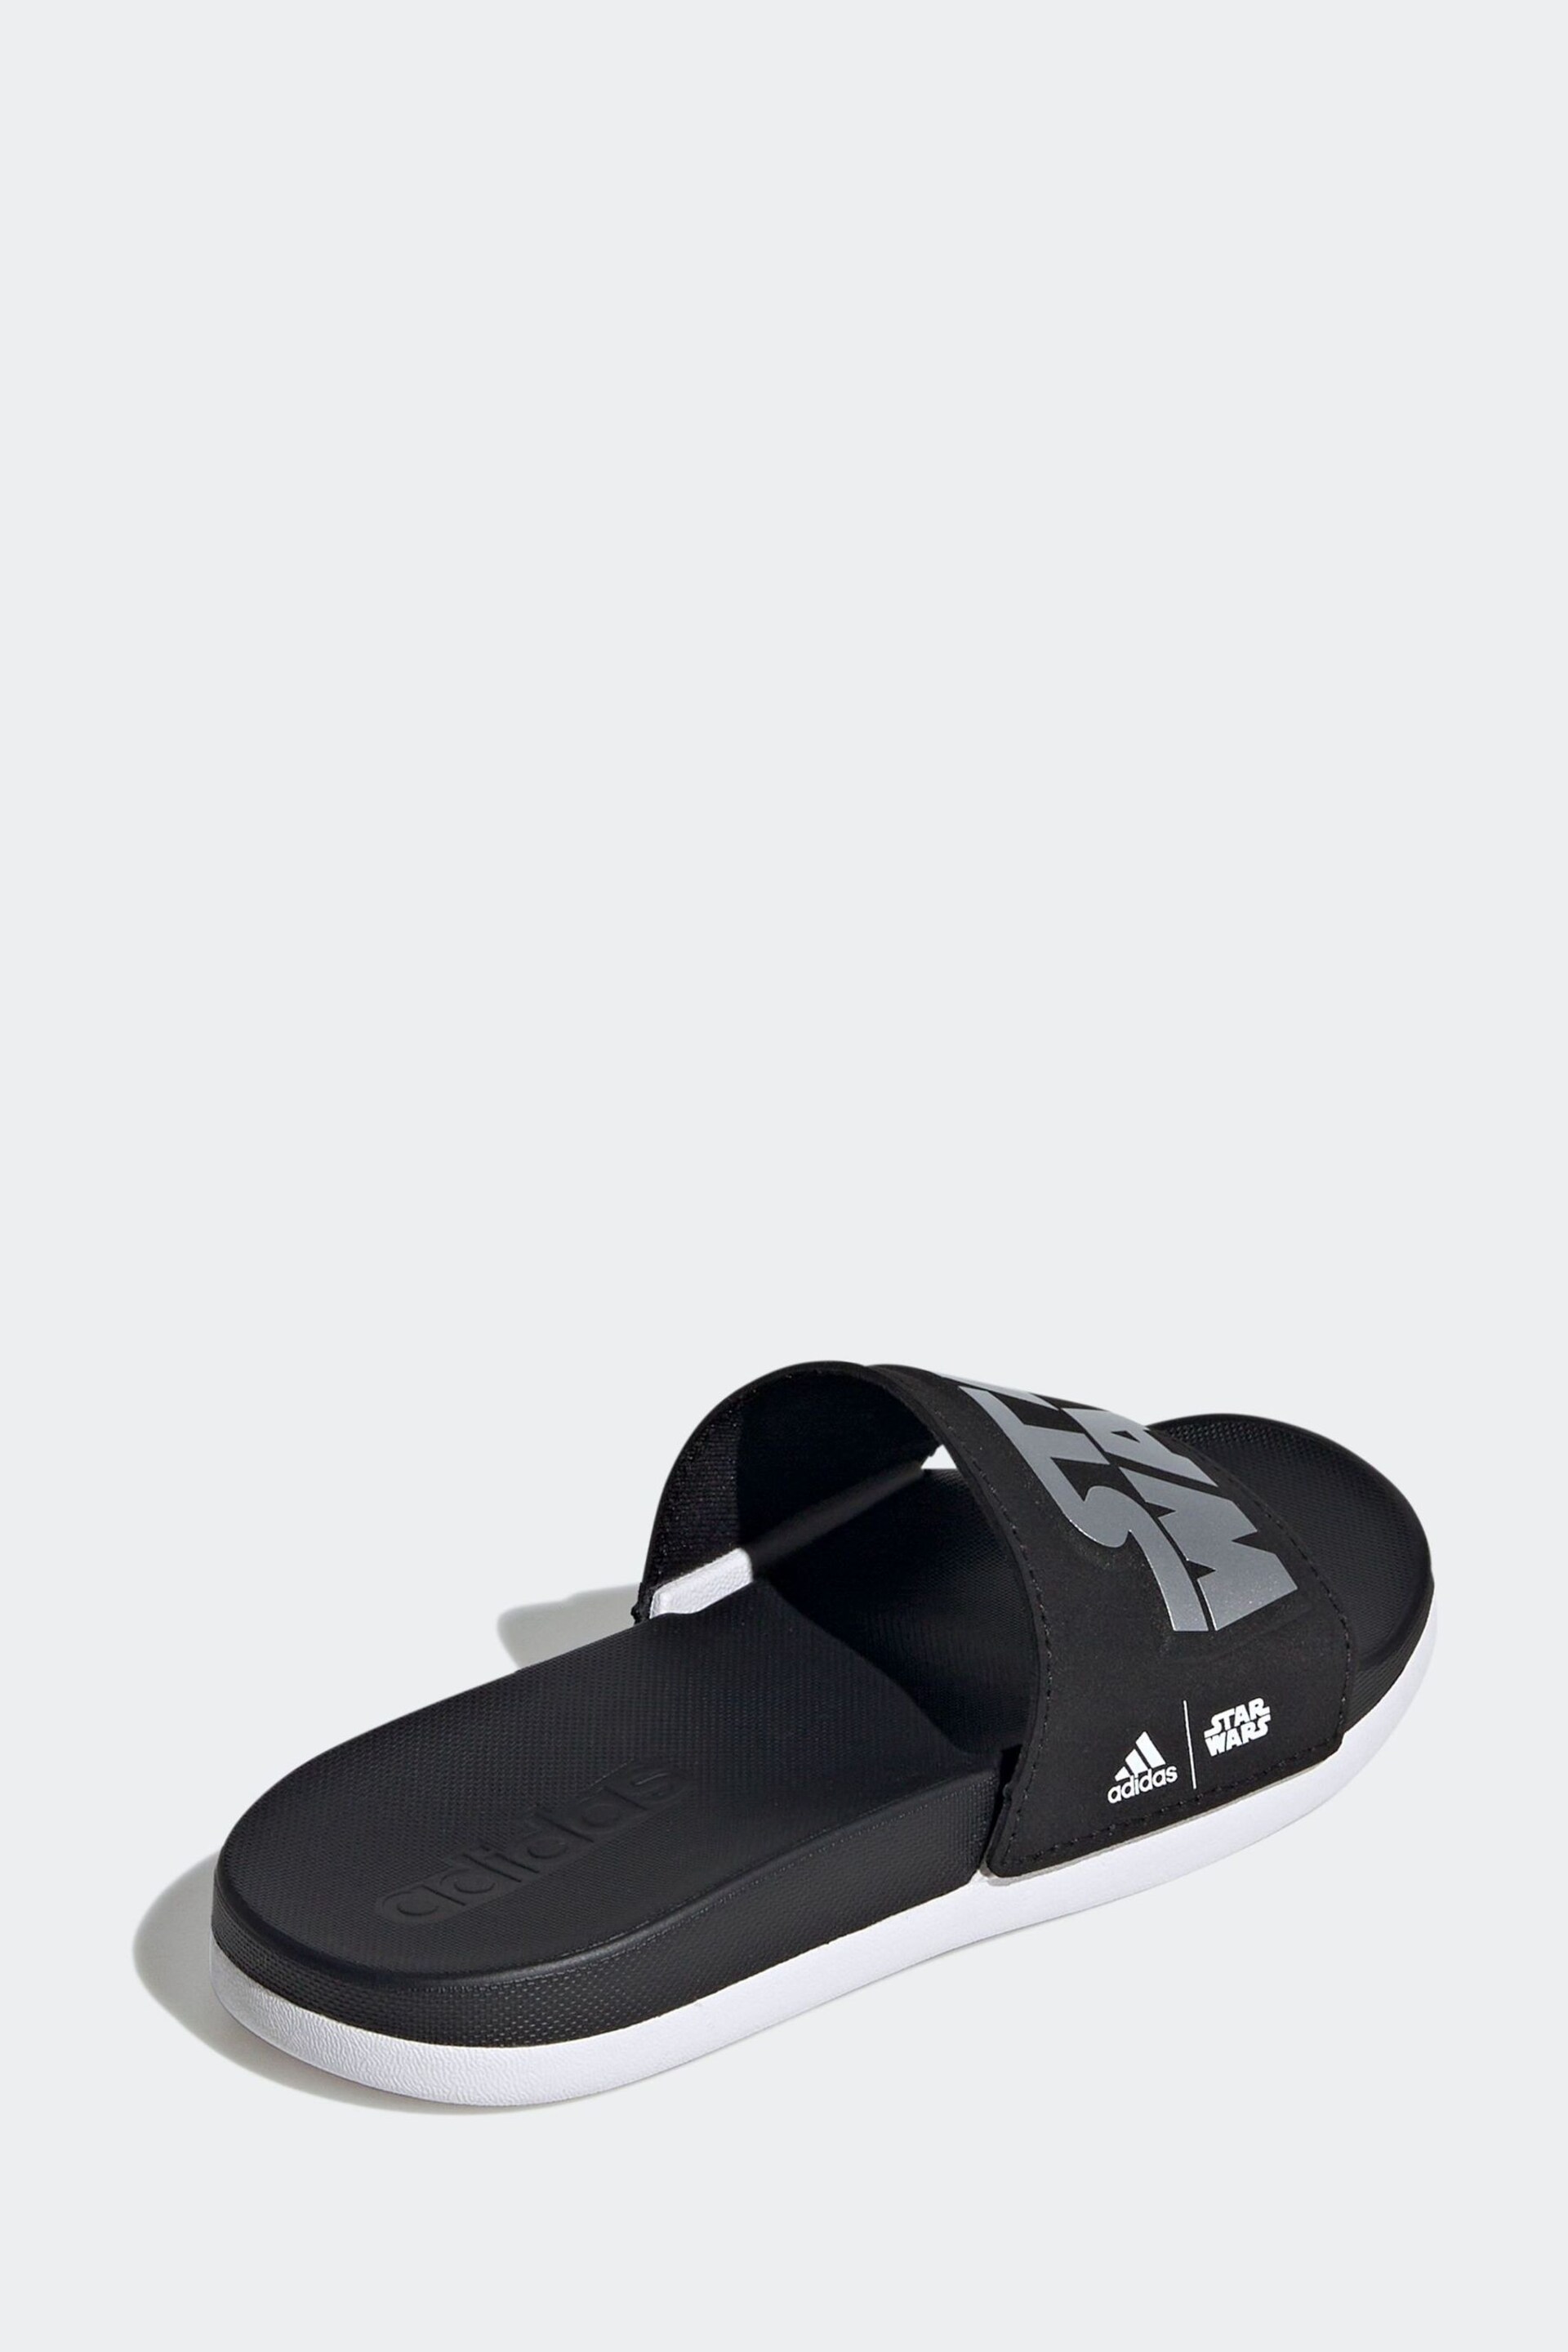 adidas Black Adilette Comfort Star Wars Sandals - Image 3 of 9